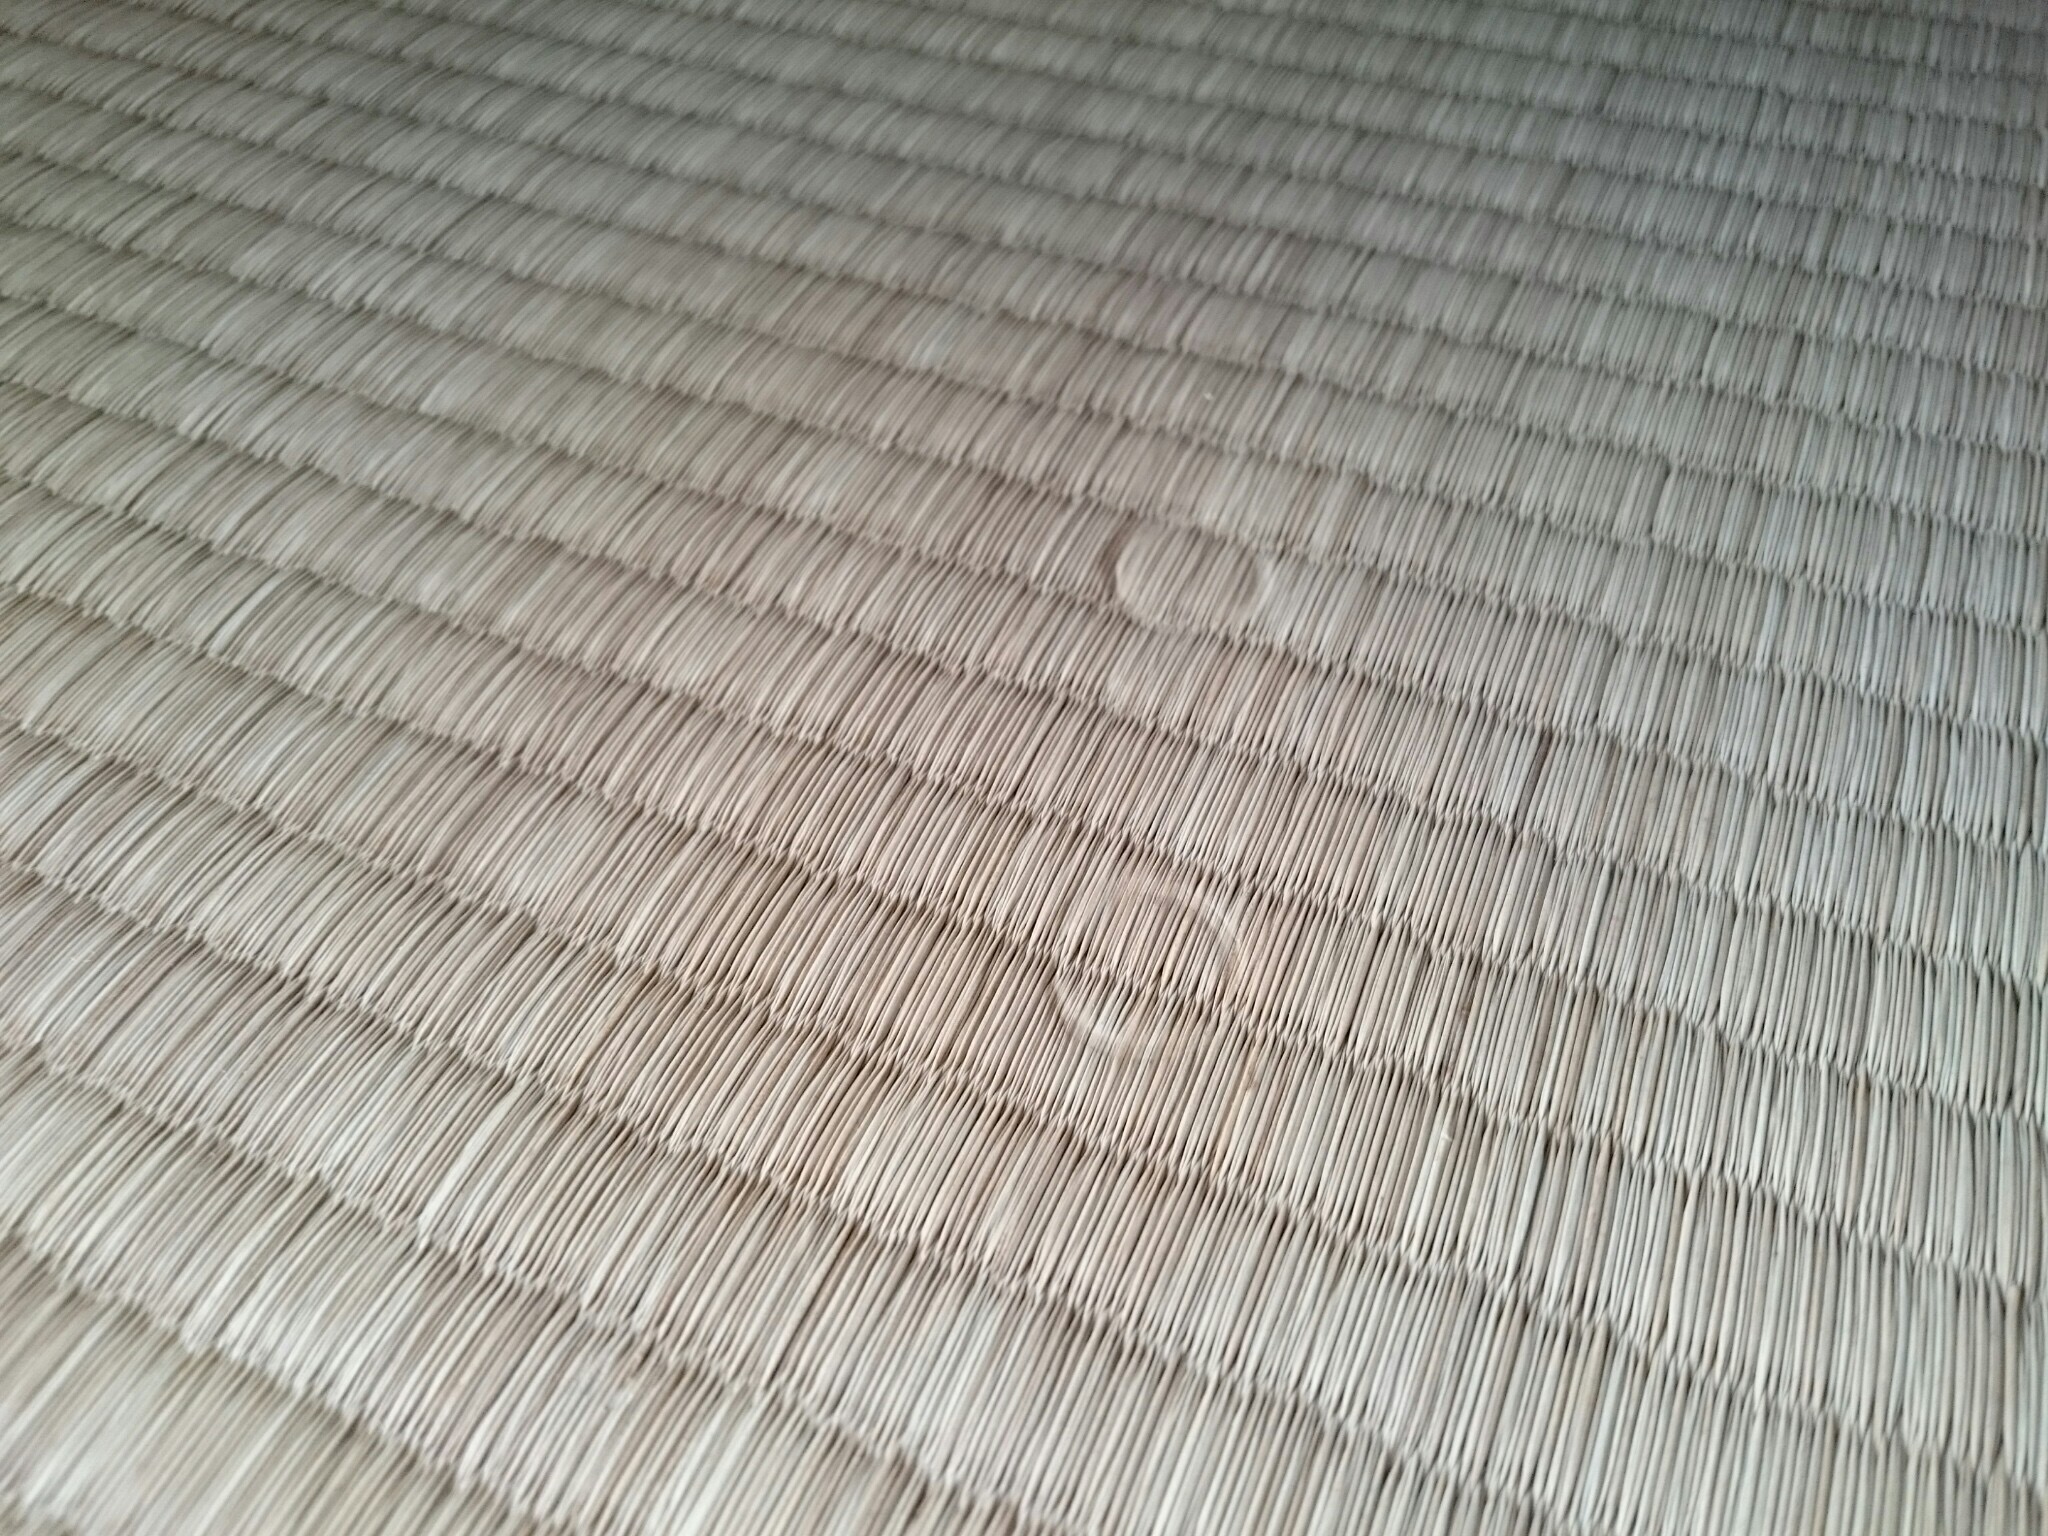 ありゃ～、畳にテーブル足の痕がついちゃったよ～～。